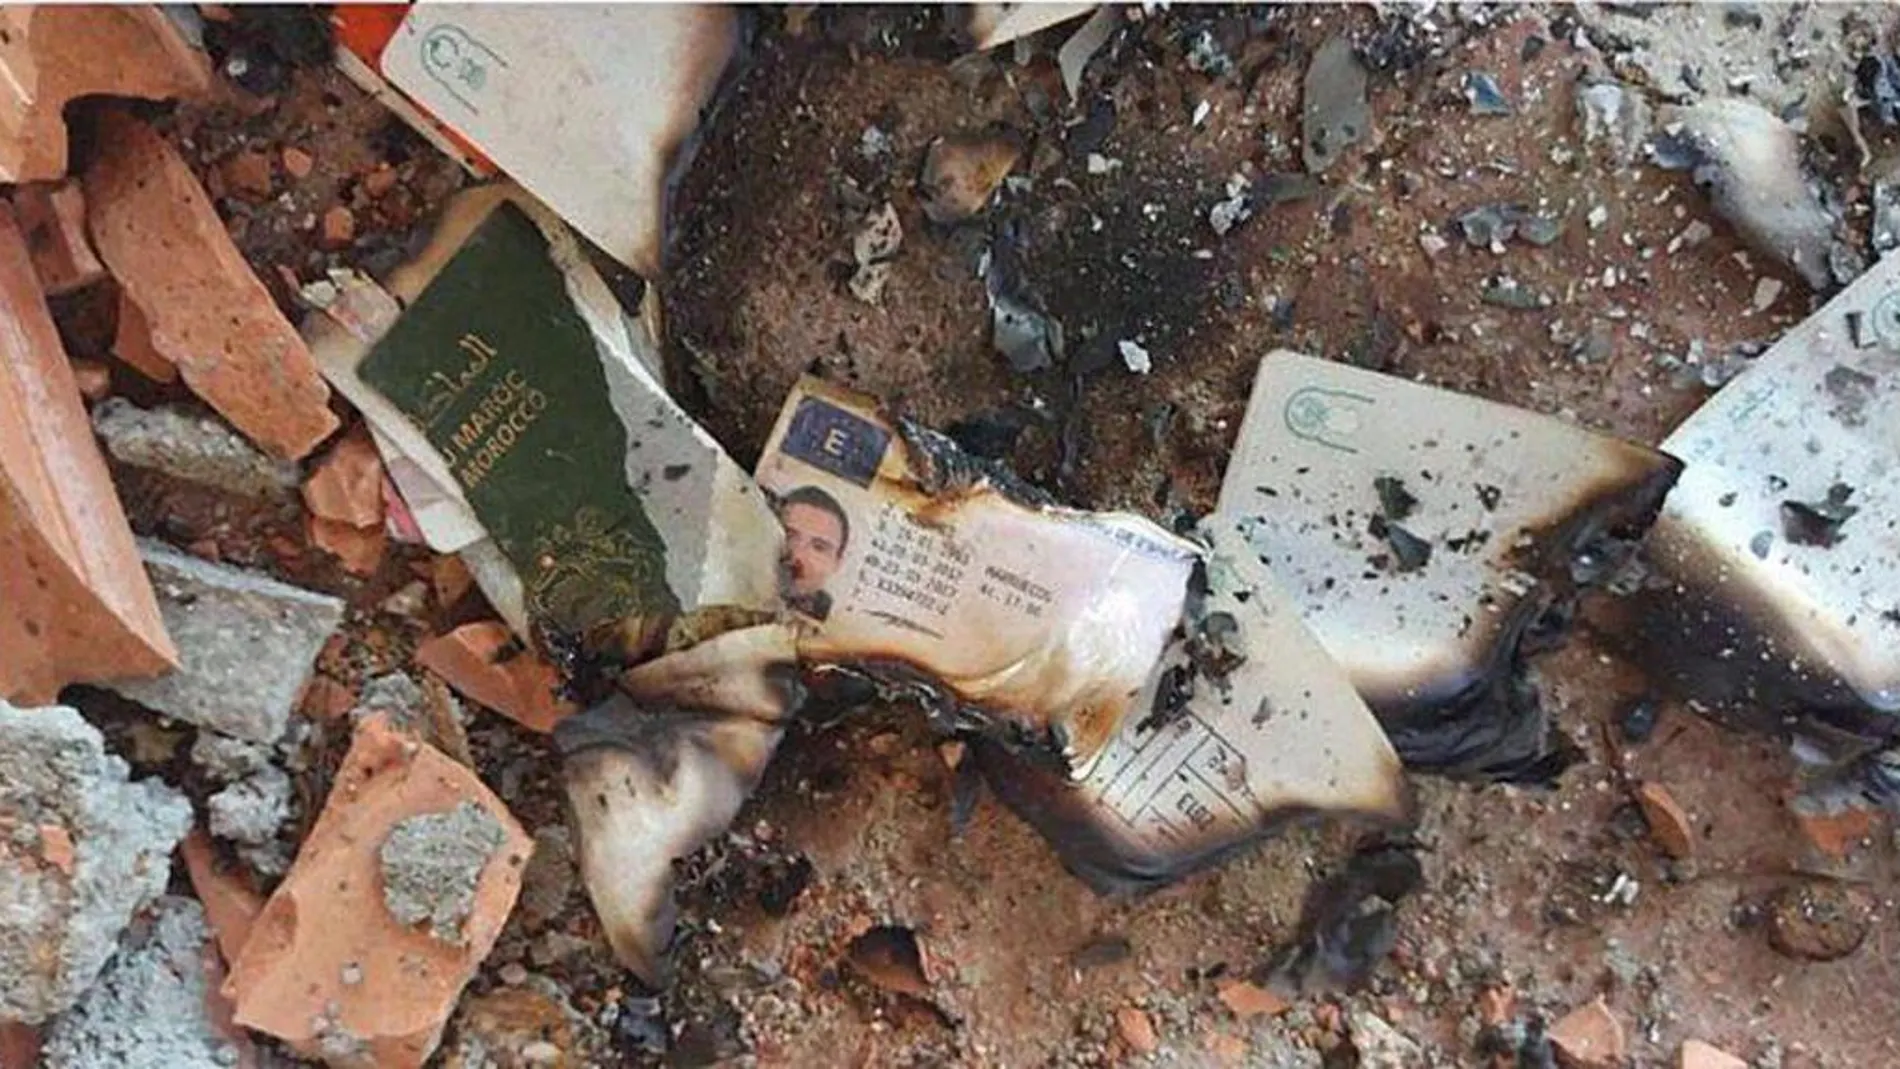 Fotografía cedida por delCamp.cat, de los restos quemados del pasaporte y el carné de conducir de Mohamed Hichamy, uno de los abatidos en Cambrils, y del pasaporte de Younes Abouyaaqoub, el autor material del atentado de Barcelona